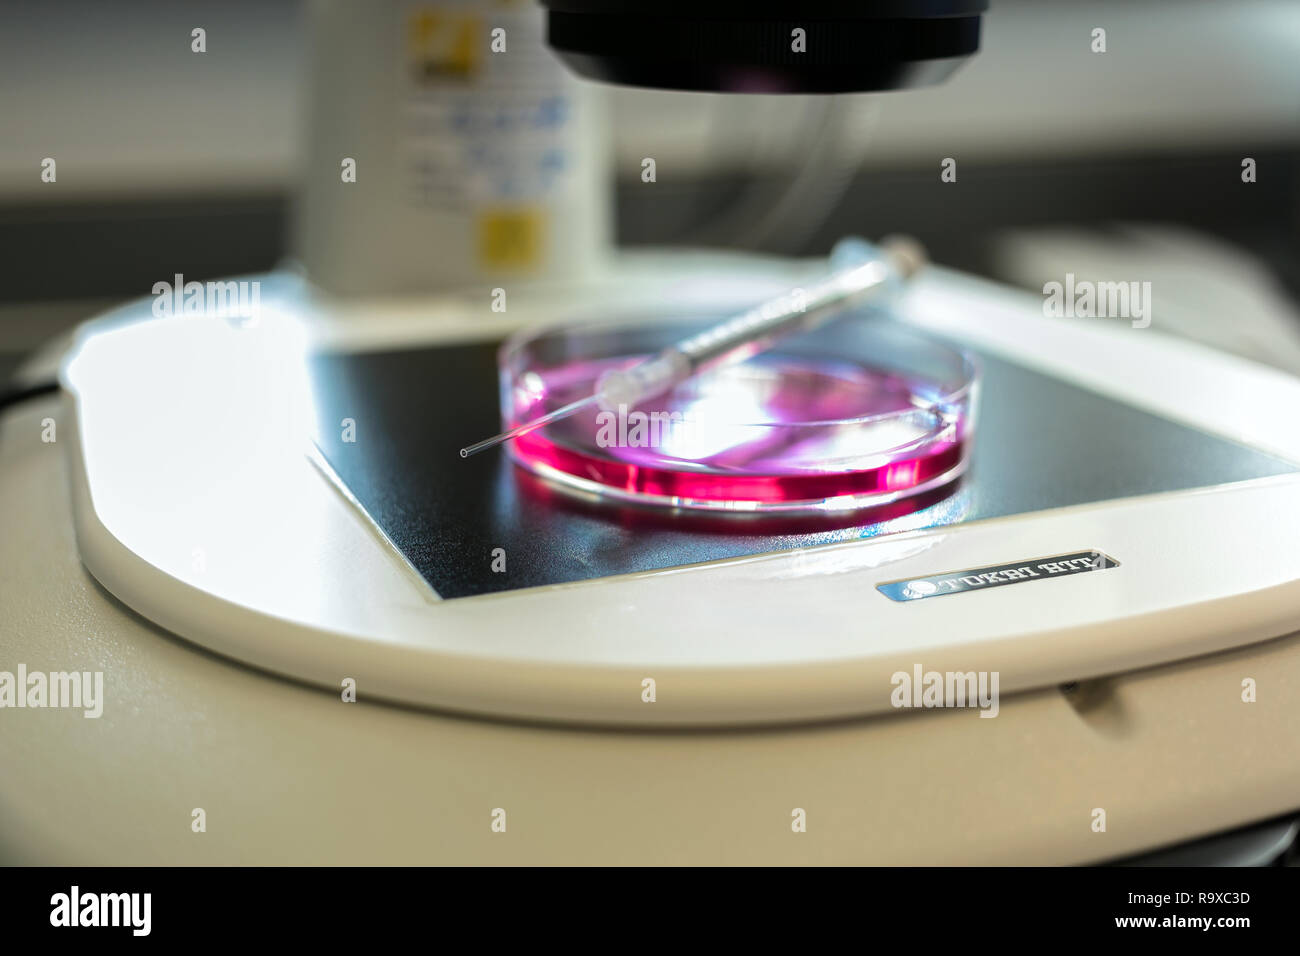 22.02.2018, Berlino, Deutschland - Kuenstliche Befruchtung nach der ICSI-Methode (Intrazytoplasmatische Spermien Injektion). Unter dem Mikroskop werden Foto Stock